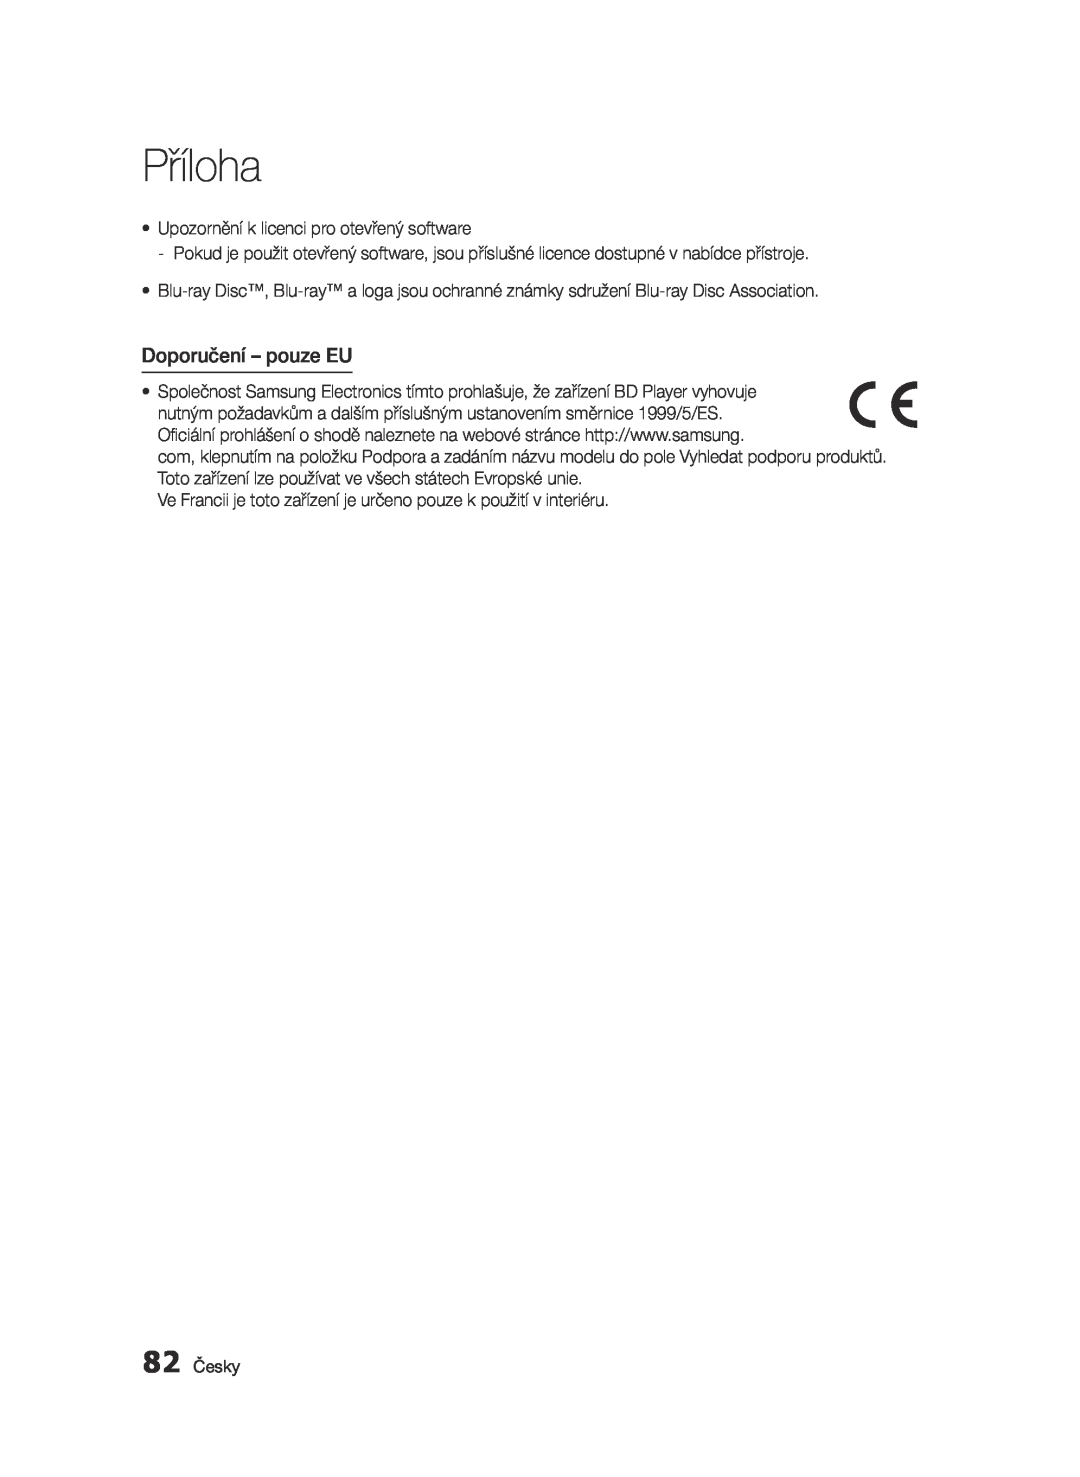 Samsung BD-E6300/EN manual Doporučení - pouze EU, Příloha 